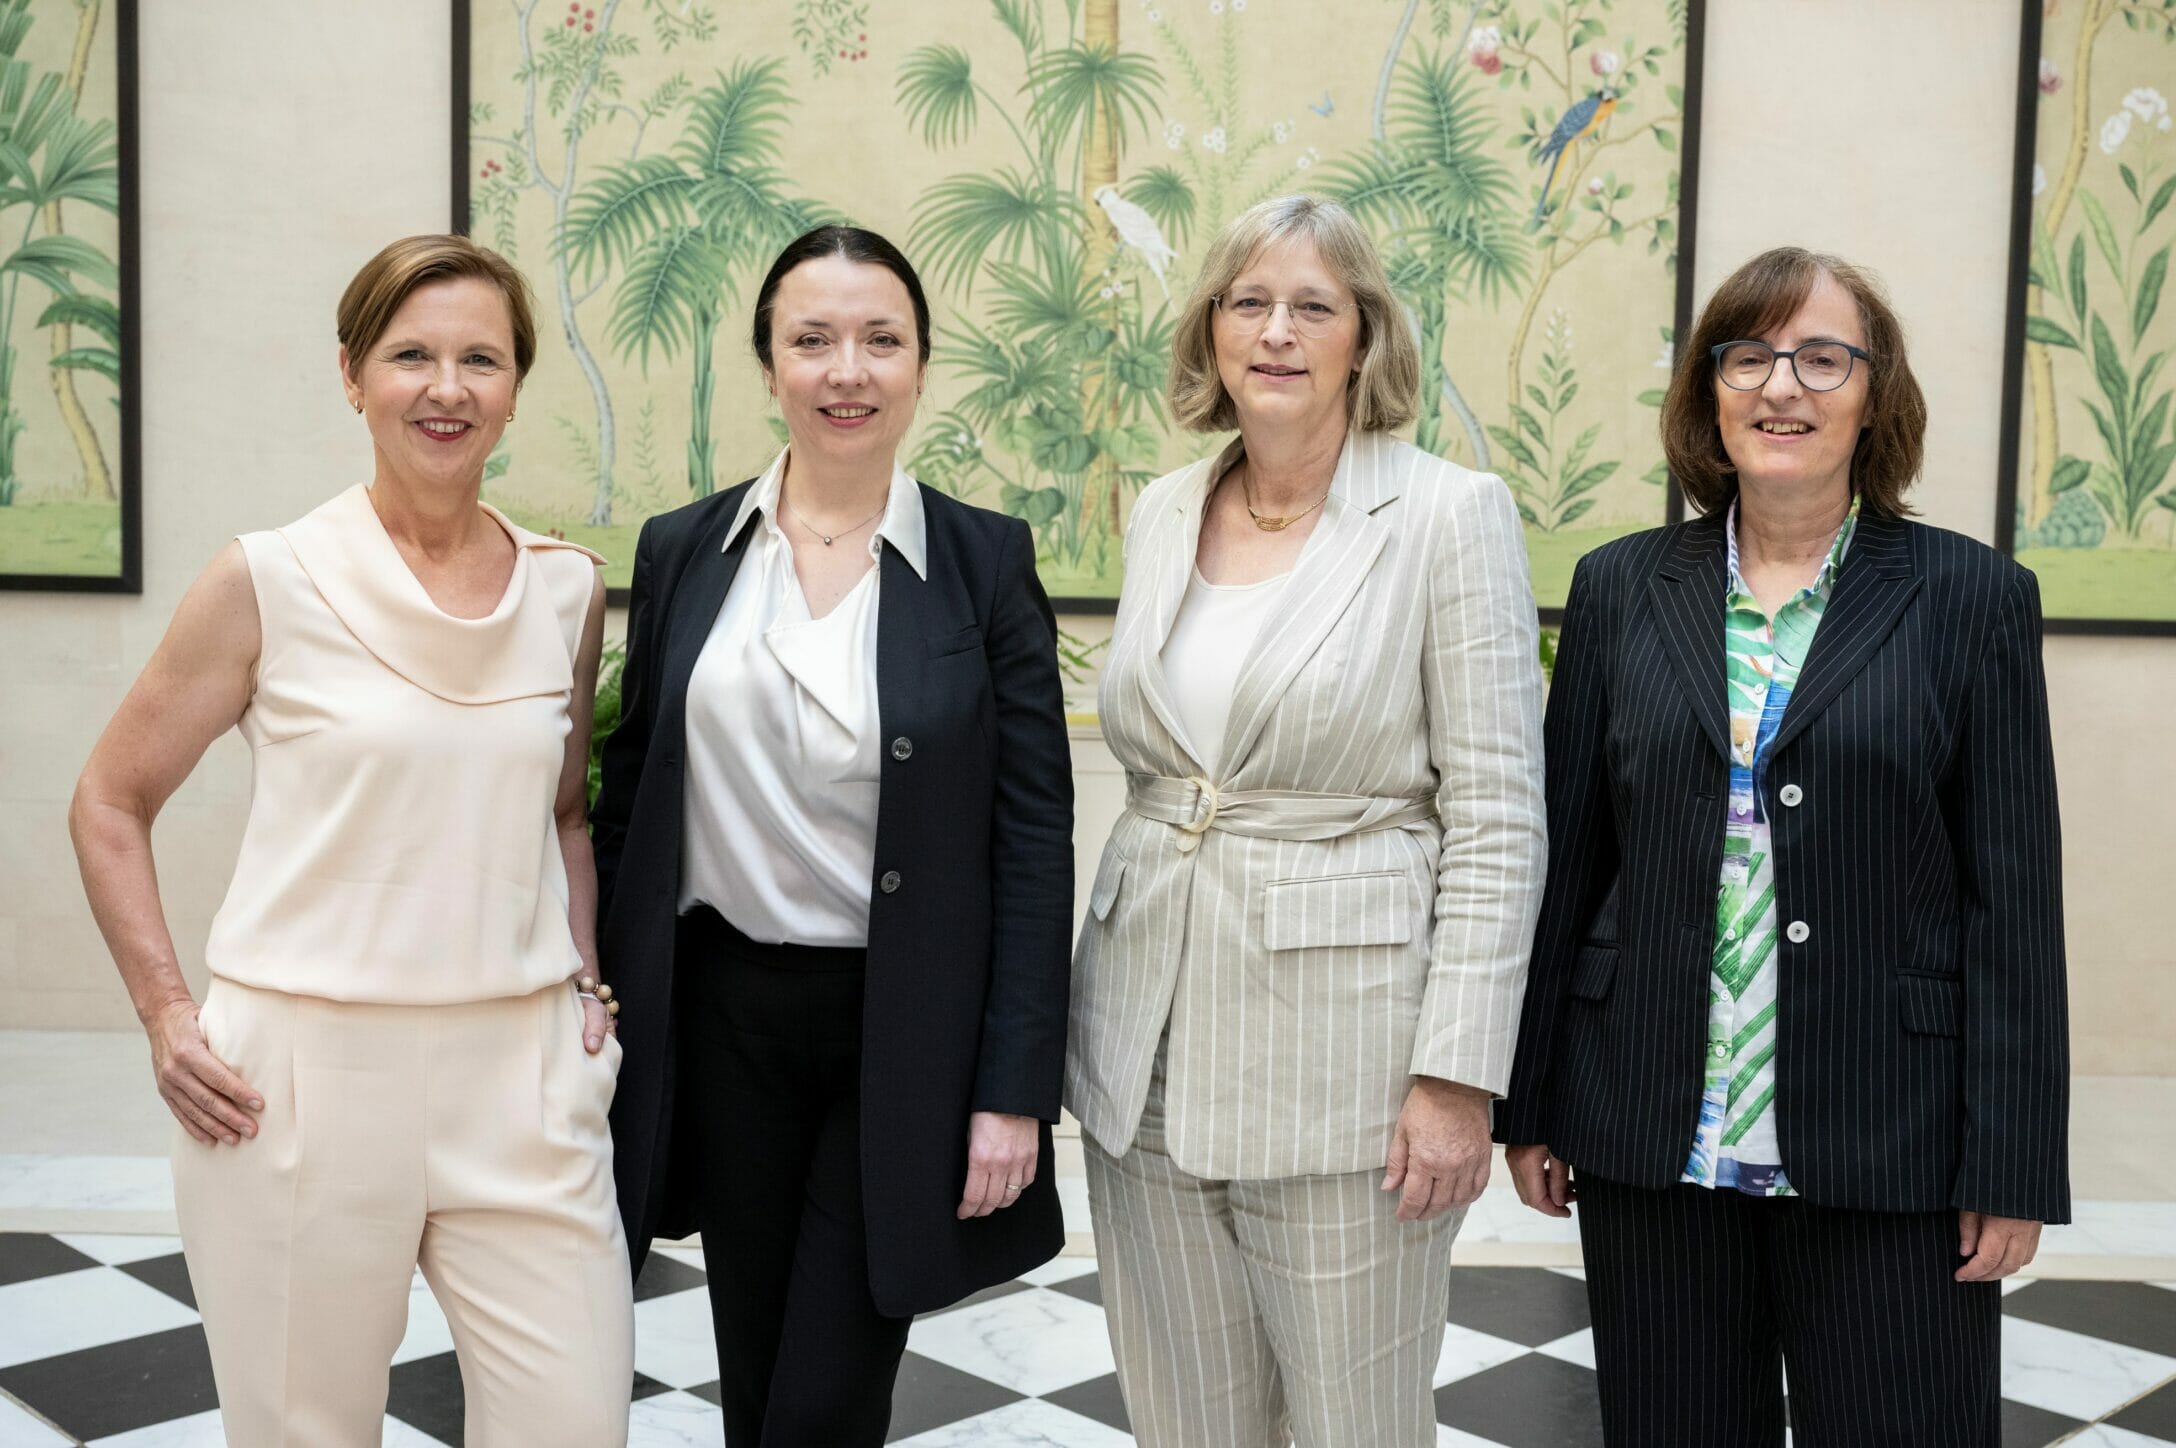 Die Frauen im Erweiterten Präsidium des Wirtschaftsforums der SPD: Dr. Tanja Wielgoß, Prof. Dr. Ines Zenke, Hiltrud Dorothea Werner und Prof. Dr. Susanne Knorre (v.l.n.r.)